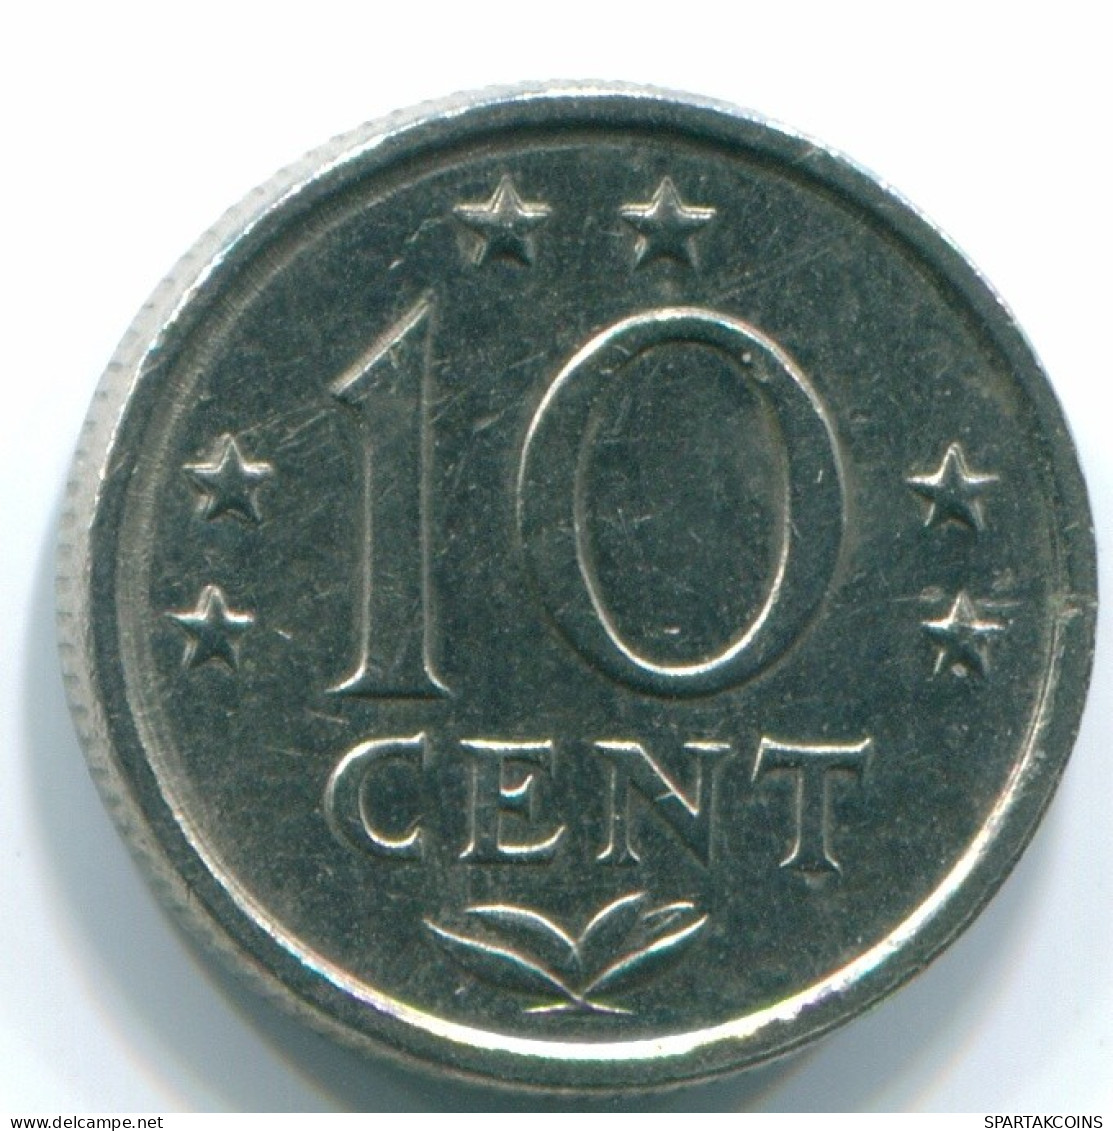 10 CENTS 1978 NIEDERLÄNDISCHE ANTILLEN Nickel Koloniale Münze #S13553.D.A - Antille Olandesi